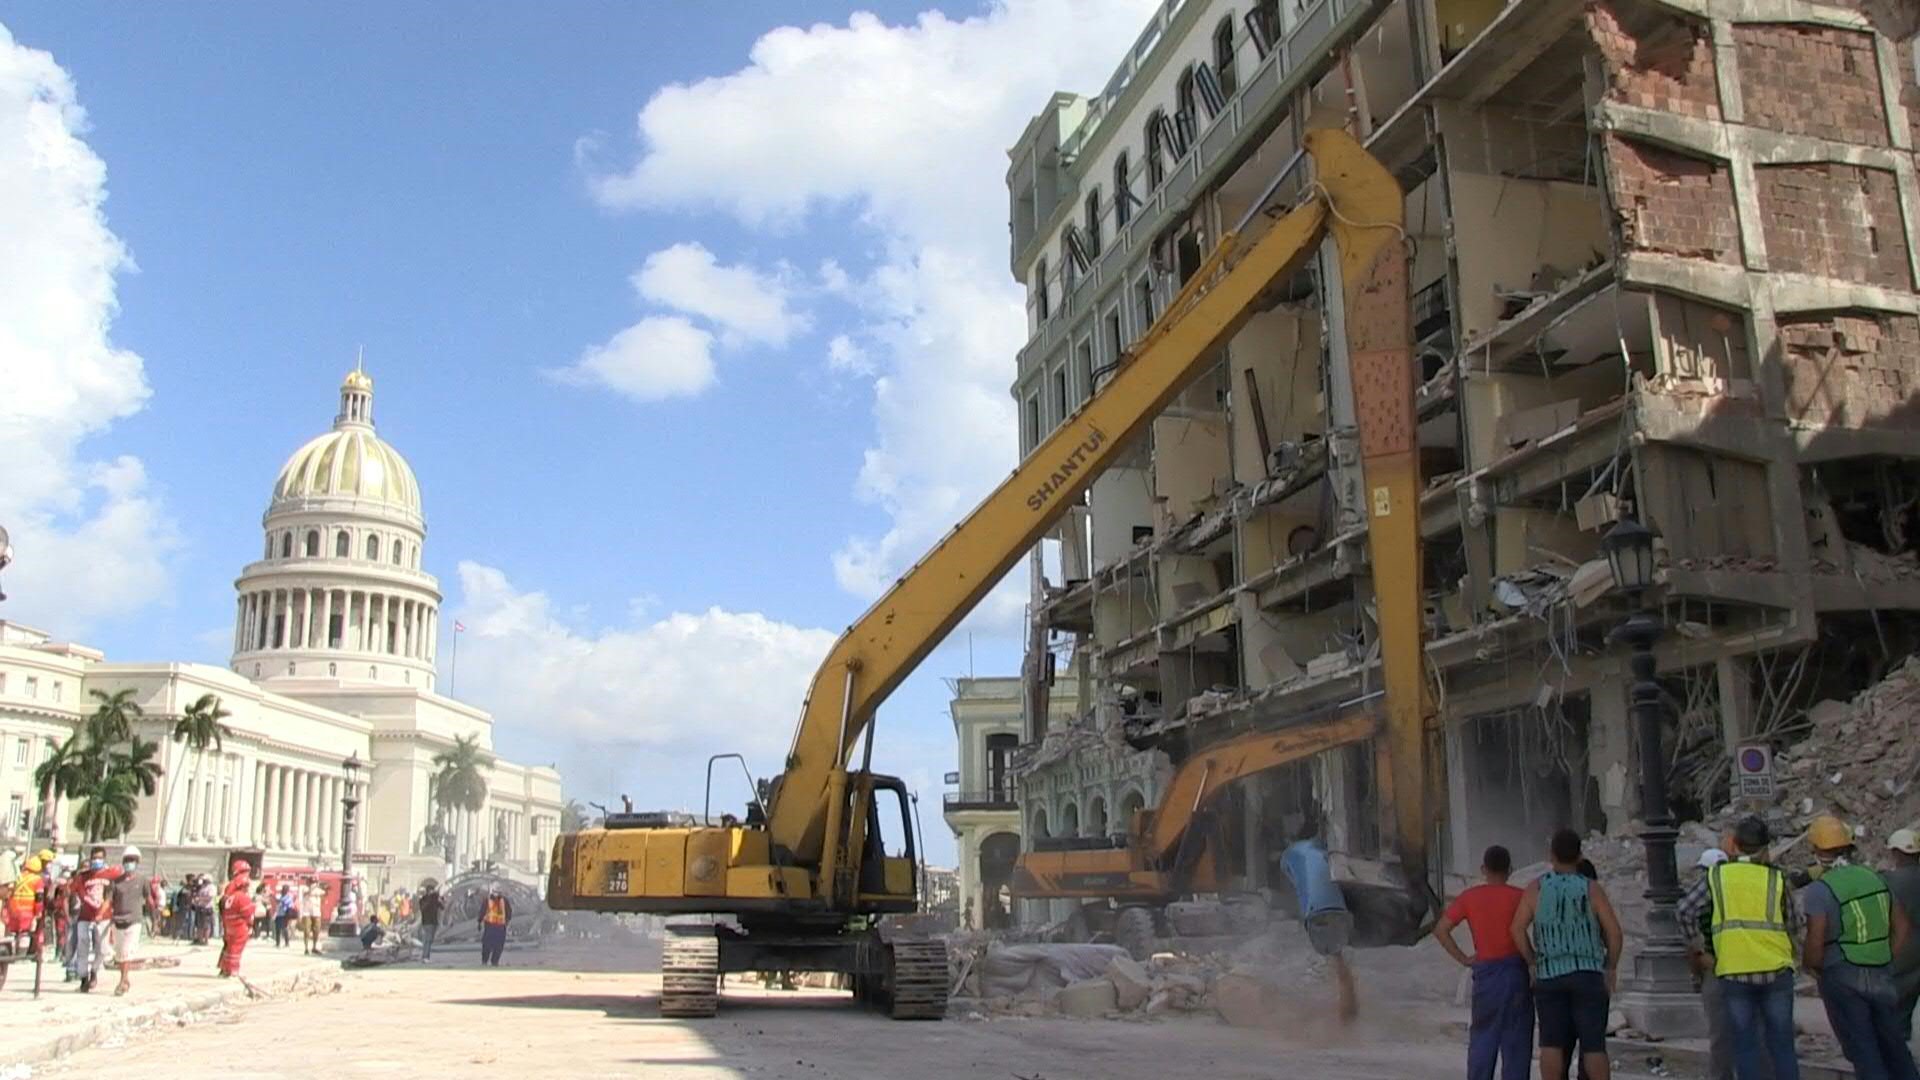 Los socorristas intentaban el sábado encontrar sobrevivientes entre los escombros del Hotel Saratoga de La Habana, parcialmente destruido por una explosión que deja más de una veintena de muertos y decenas de personas hospitalizadas.